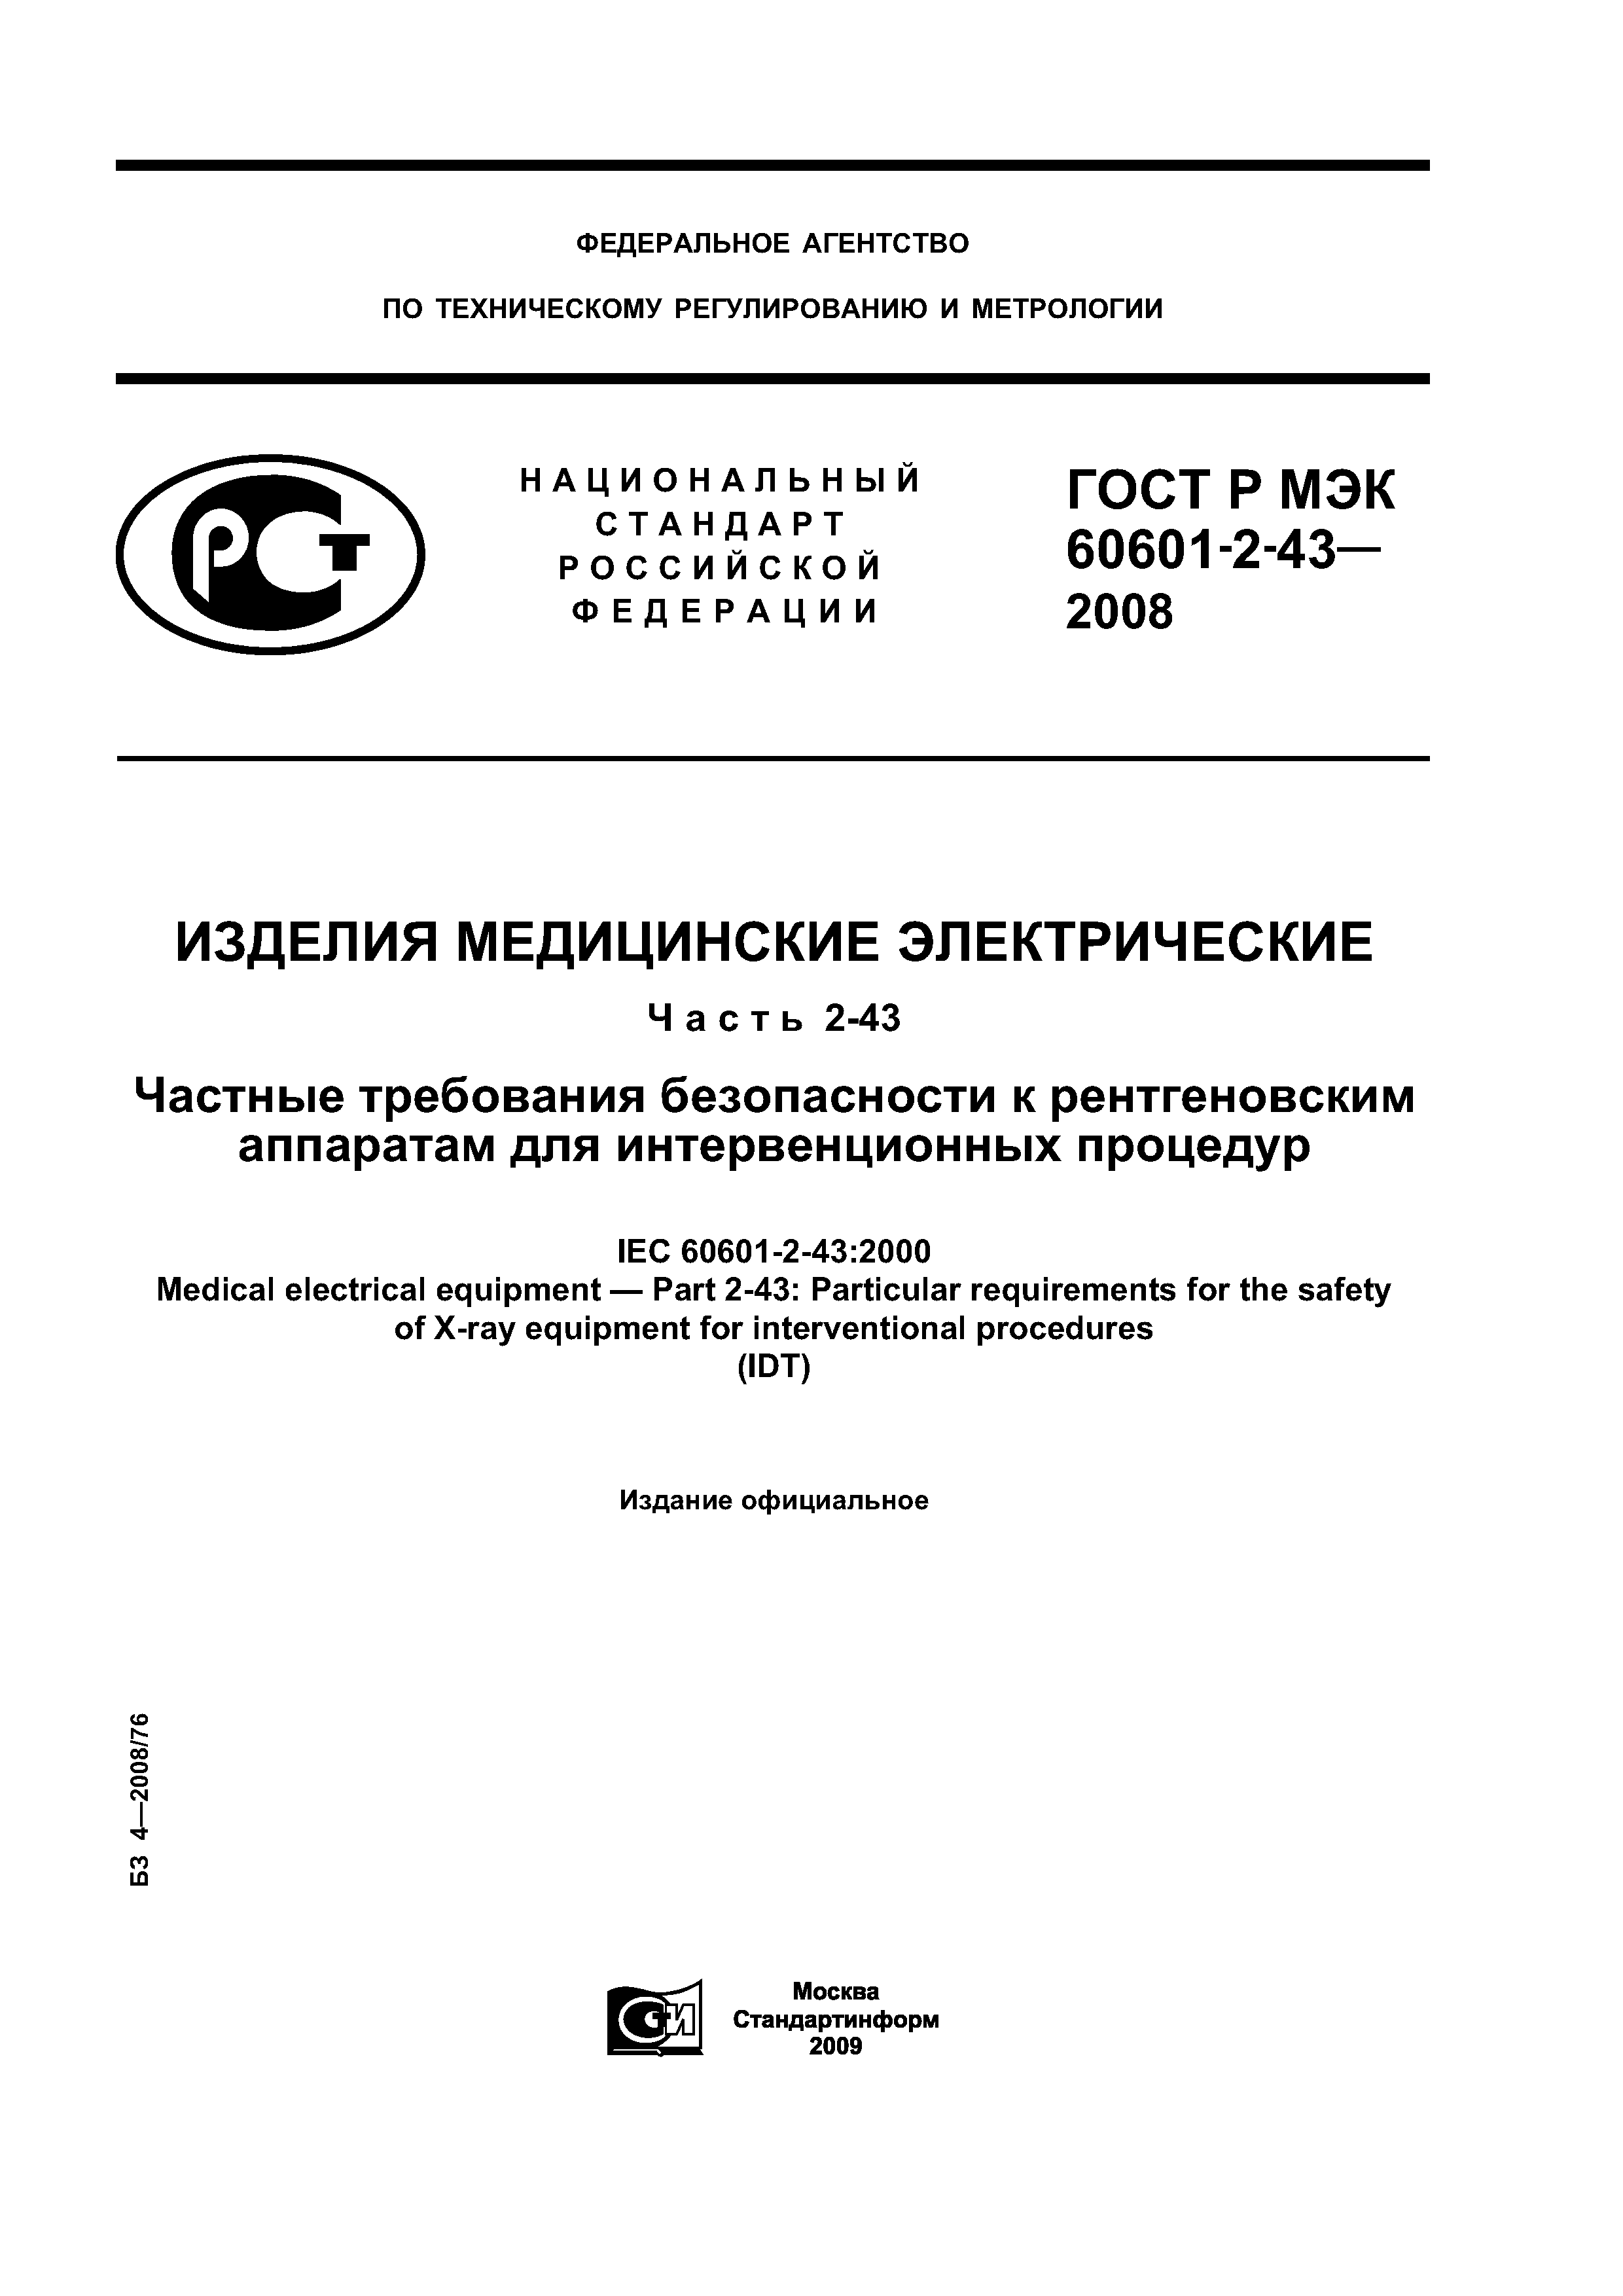 ГОСТ Р МЭК 60601-2-43-2008